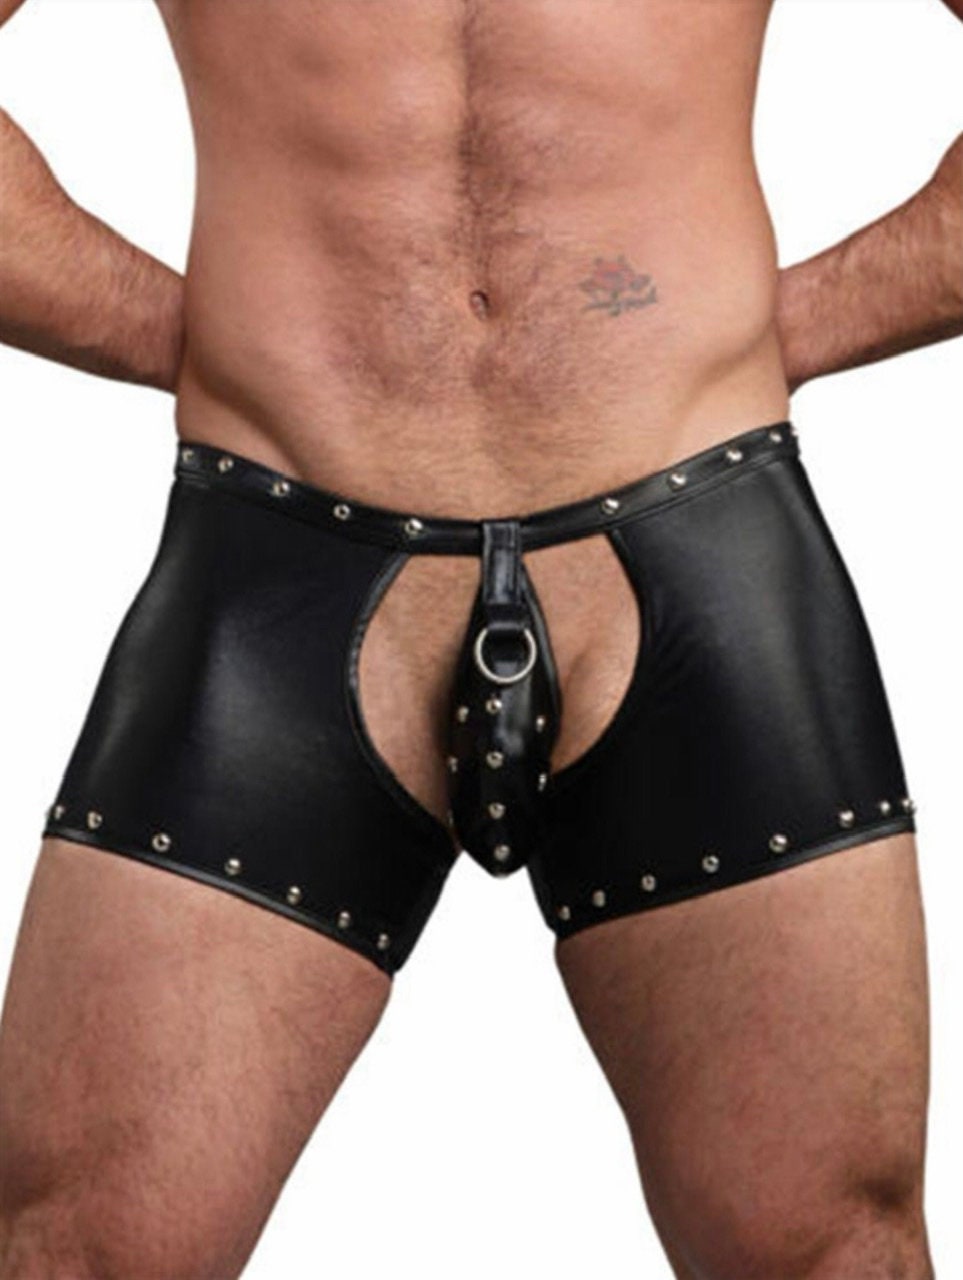 NEW ARRIVAL Rivet Lingerie Shorts Exotic Pants Latex Bondage Open Butt Penis Pouch Jockstrap Trunk Gothic Fetish Gay PU Leather Clubwear - NansUniqueShop4Men